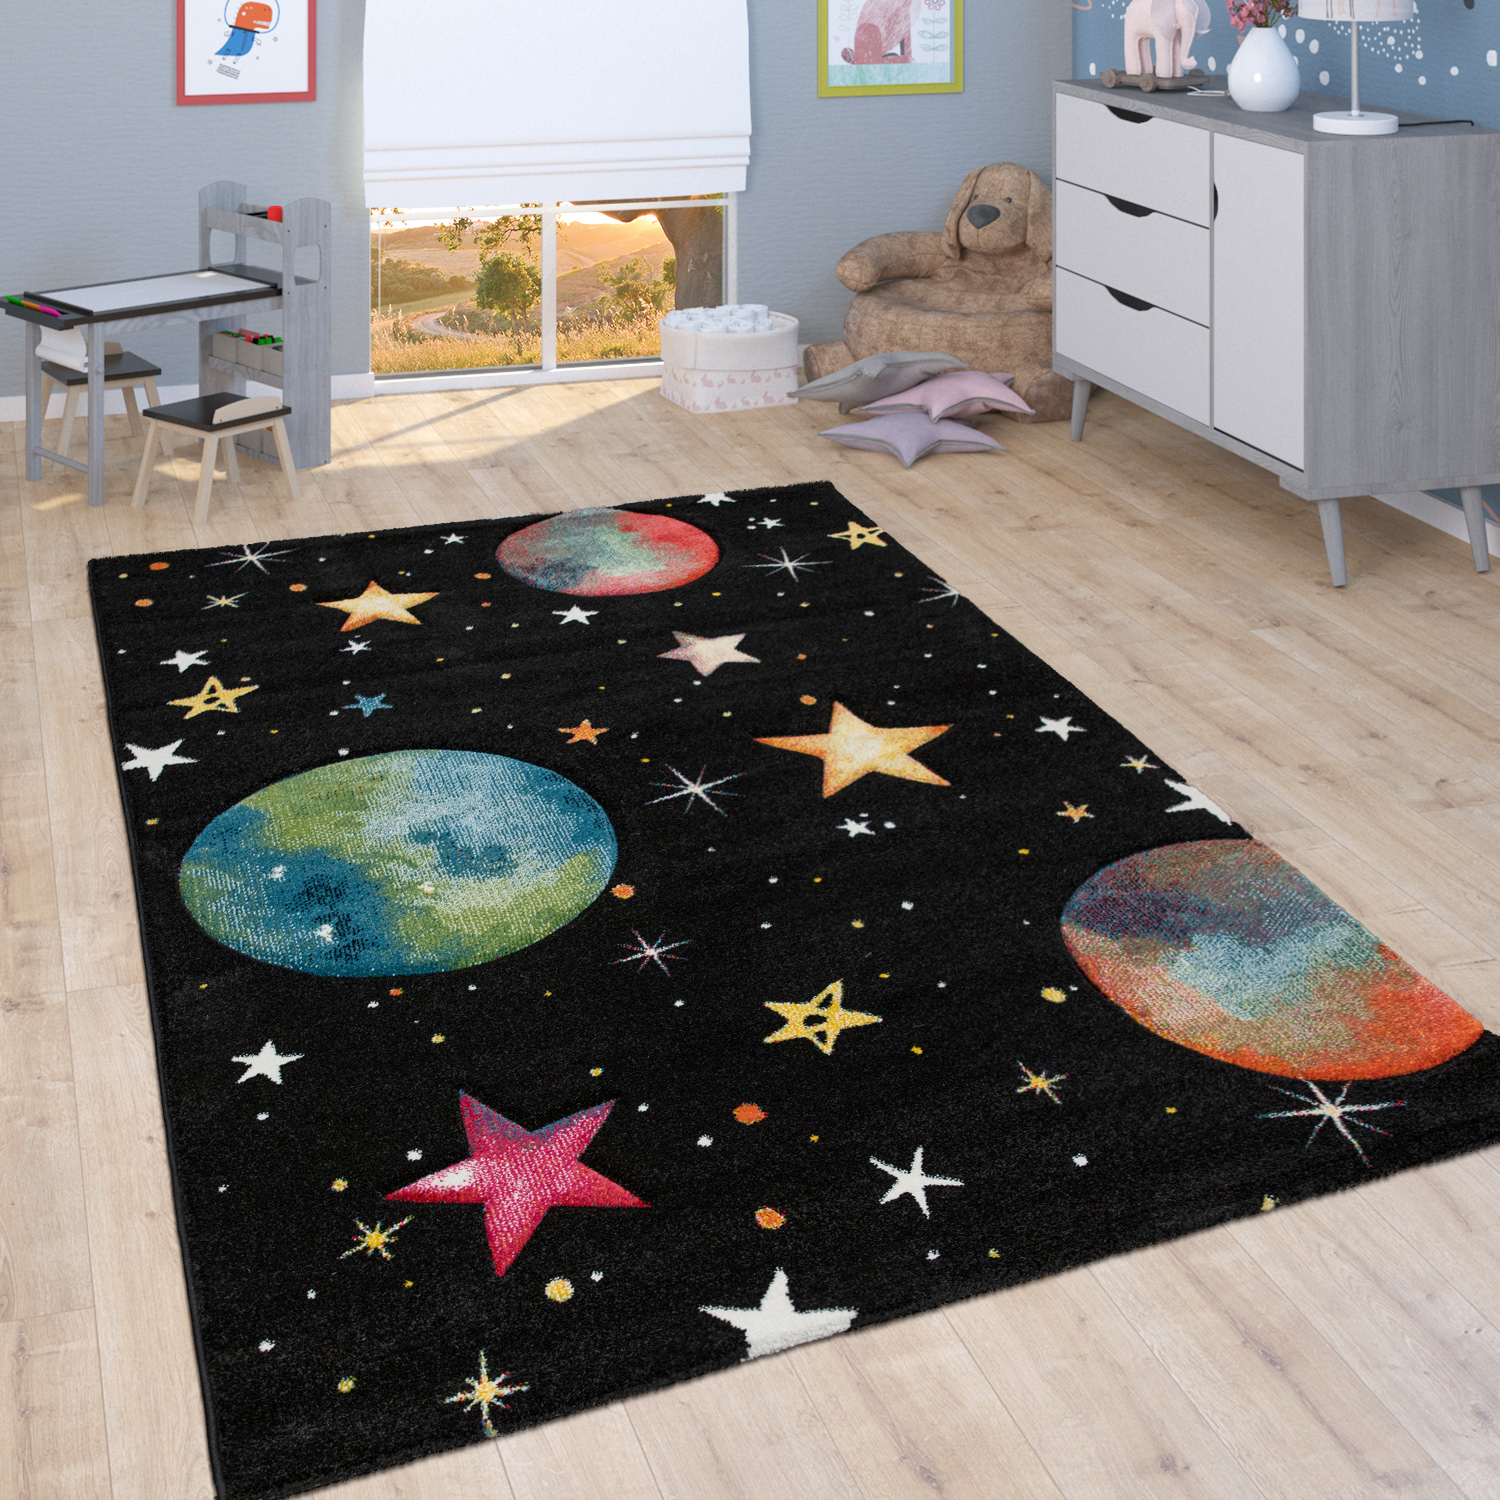 Spiel-Teppich Kinderzimmer Planeten Sterne Schwarz 